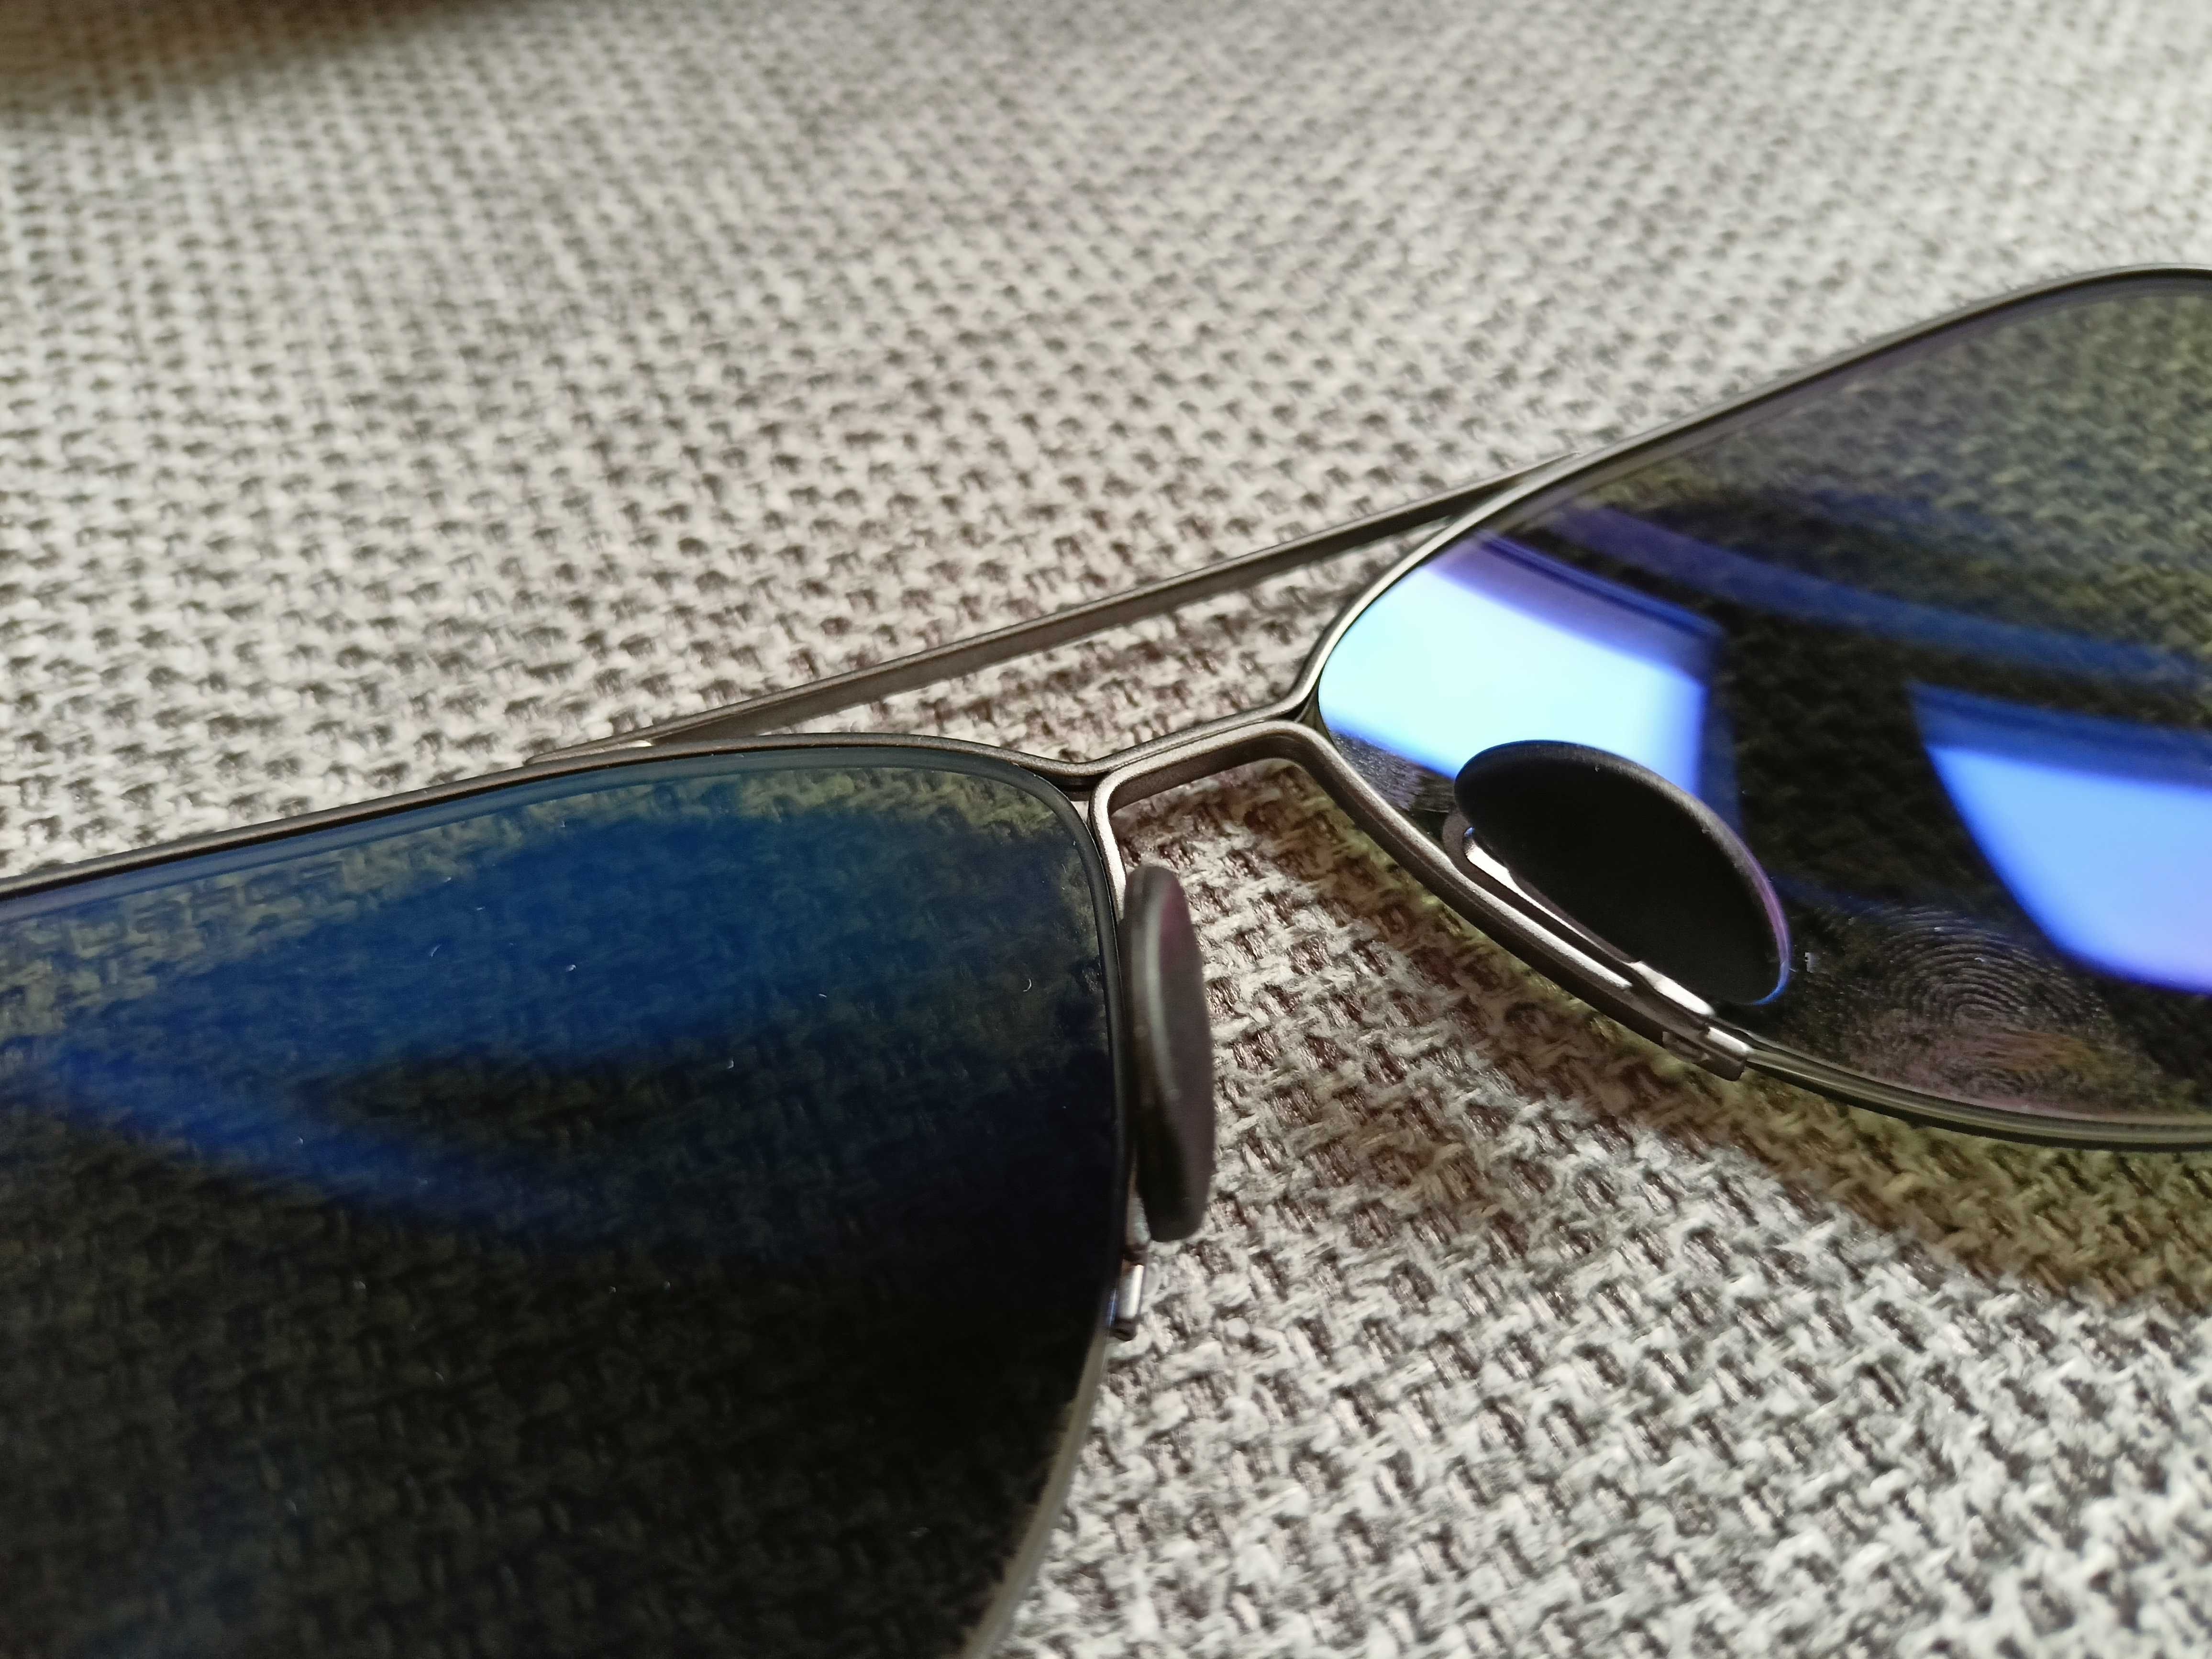 Слънчеви очила Porsche design, Bauhaus aviator, огледални, антирефлекс